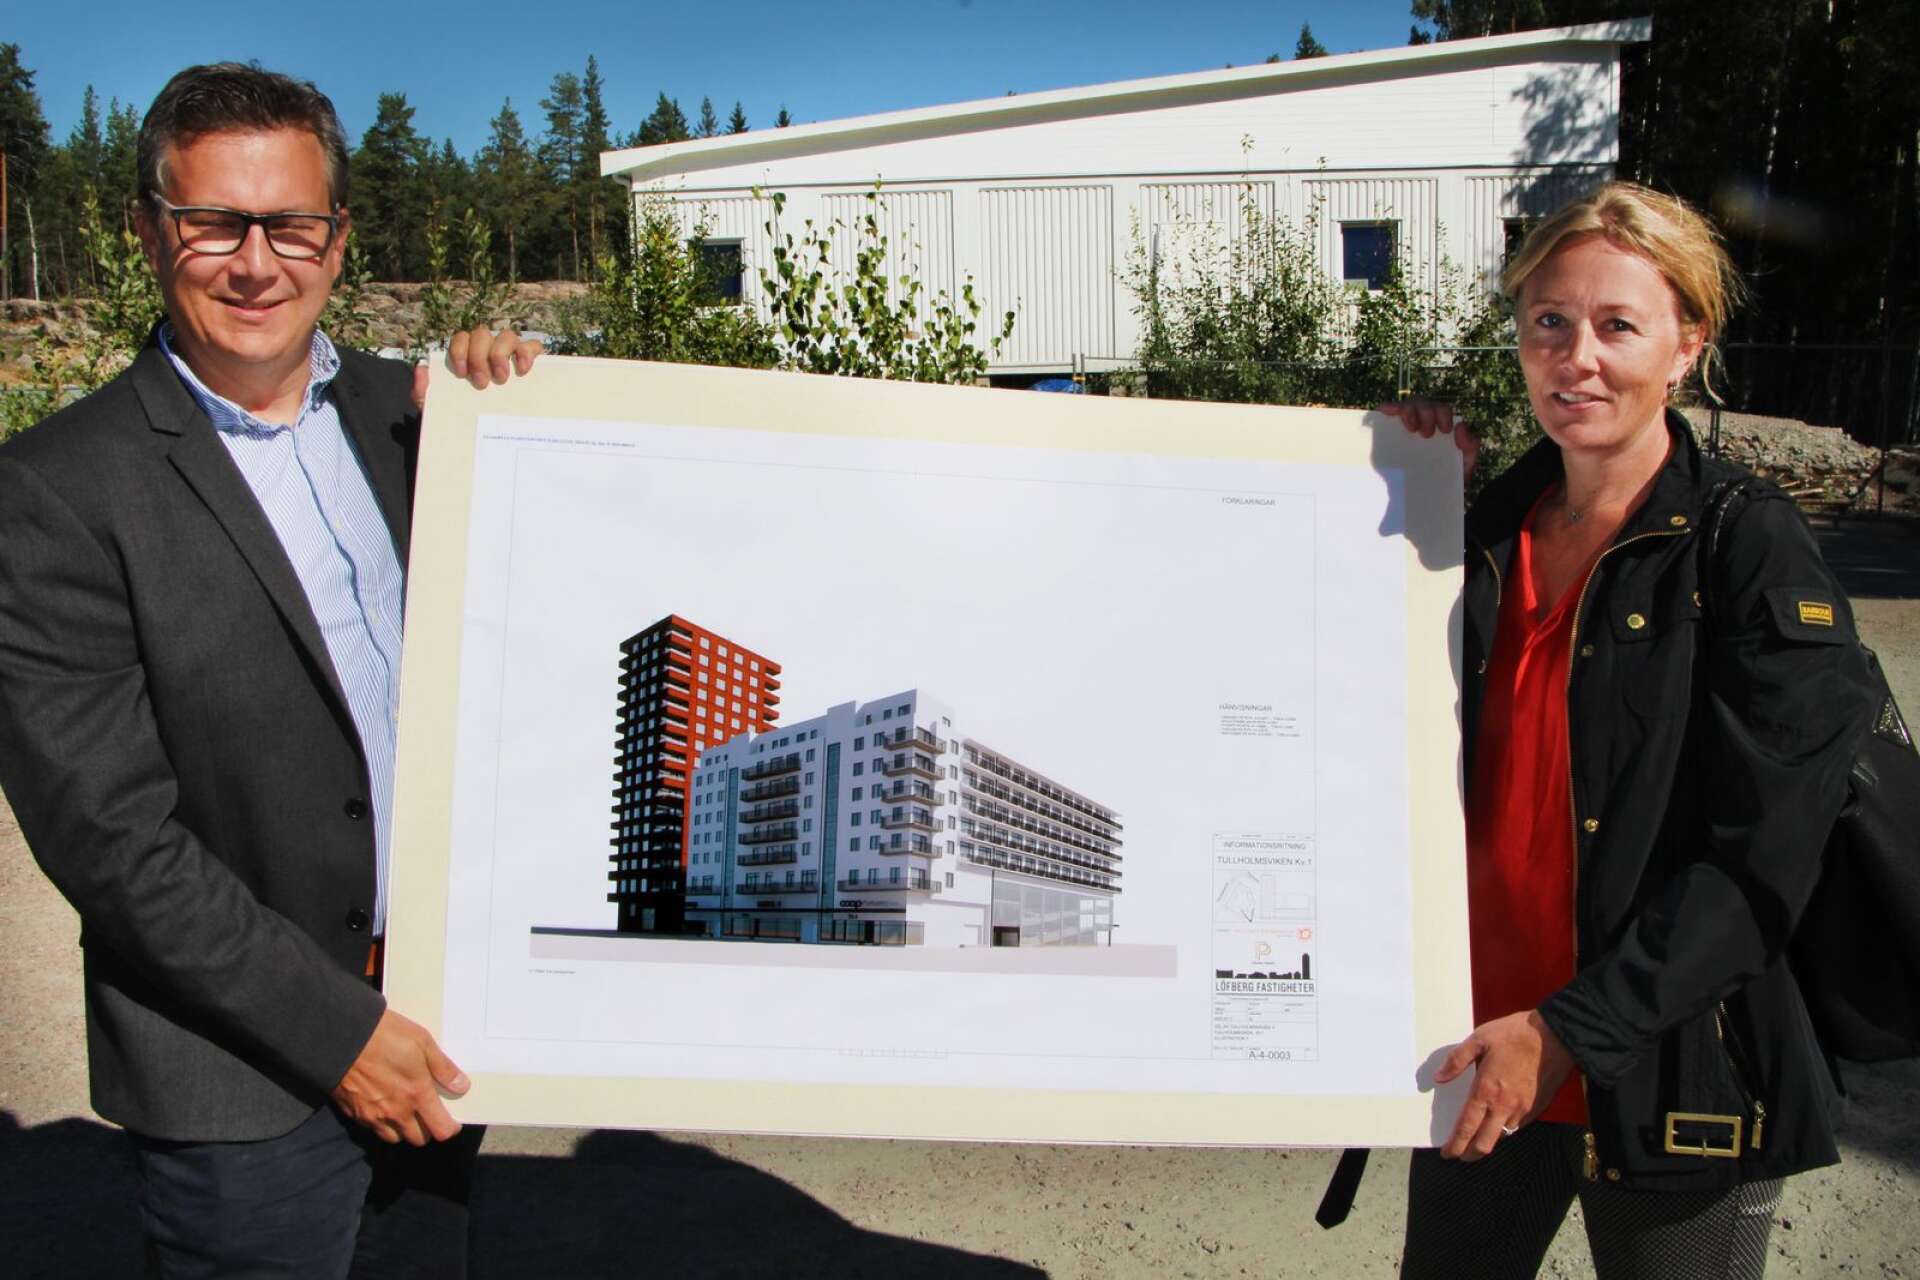 NWT fastighet har köpt 132 nya hyresrätter vid Tullholmsviken. På bilden ses fastighetschefen Magnus Henriksson och Maria Frykblom, fastighetsutvecklare på Prepart som har tagit fram projektet tillsammans med Löfberg fastigheter.